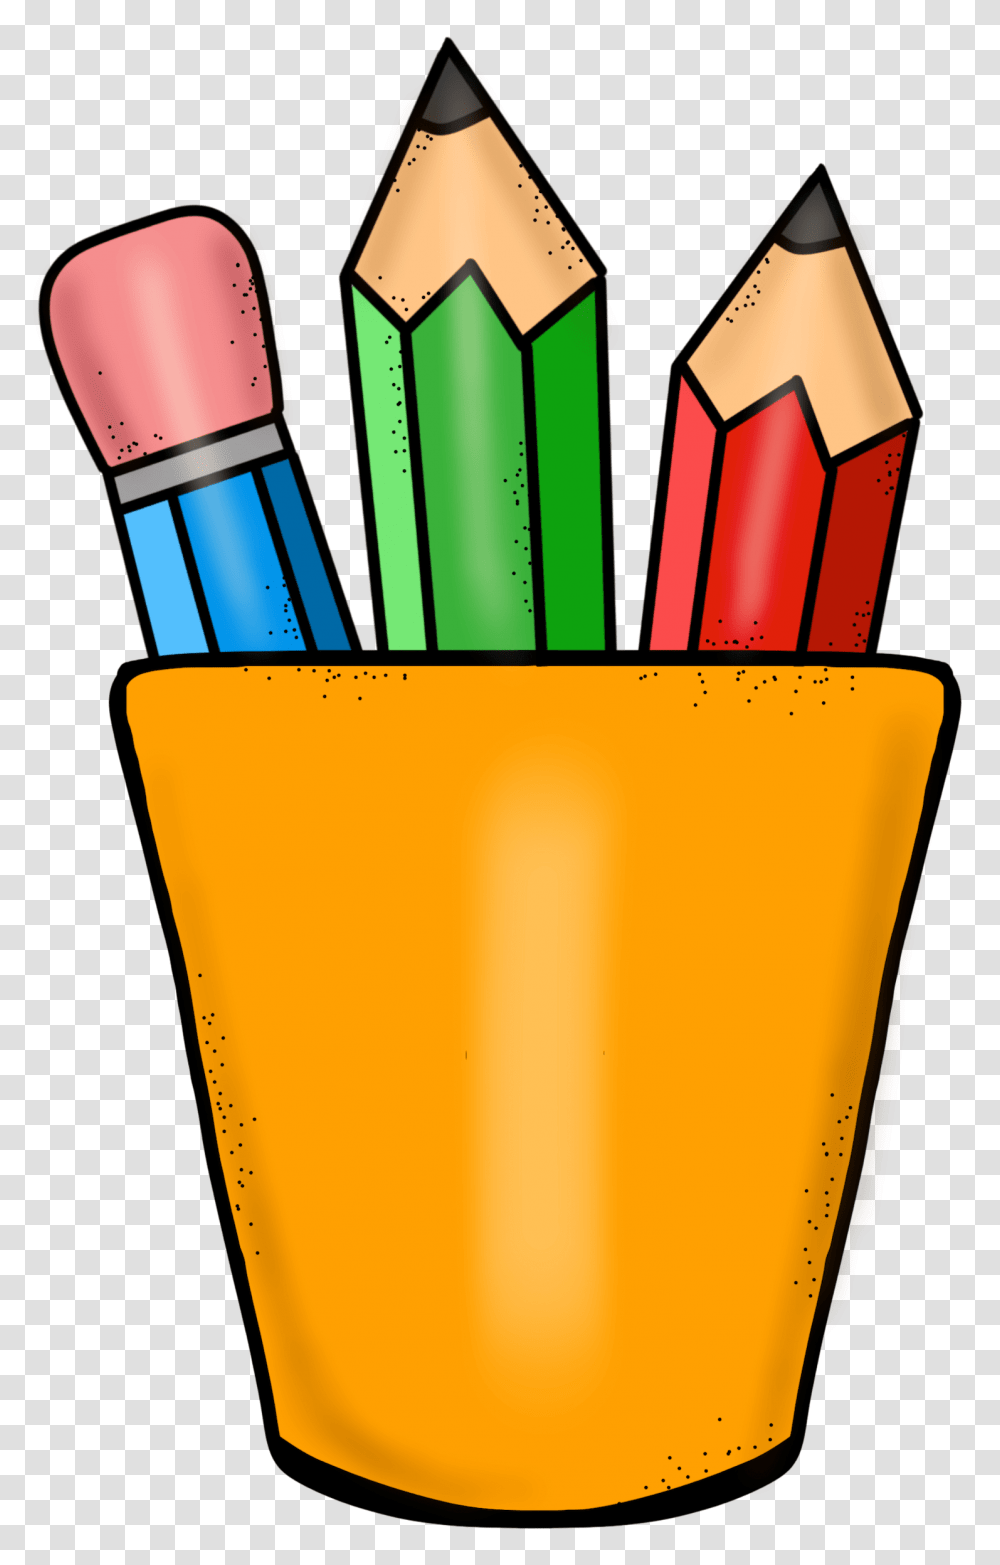 Pencil Clip Art For Teachers Free Pencil Clipart For Teachers Transparent Png